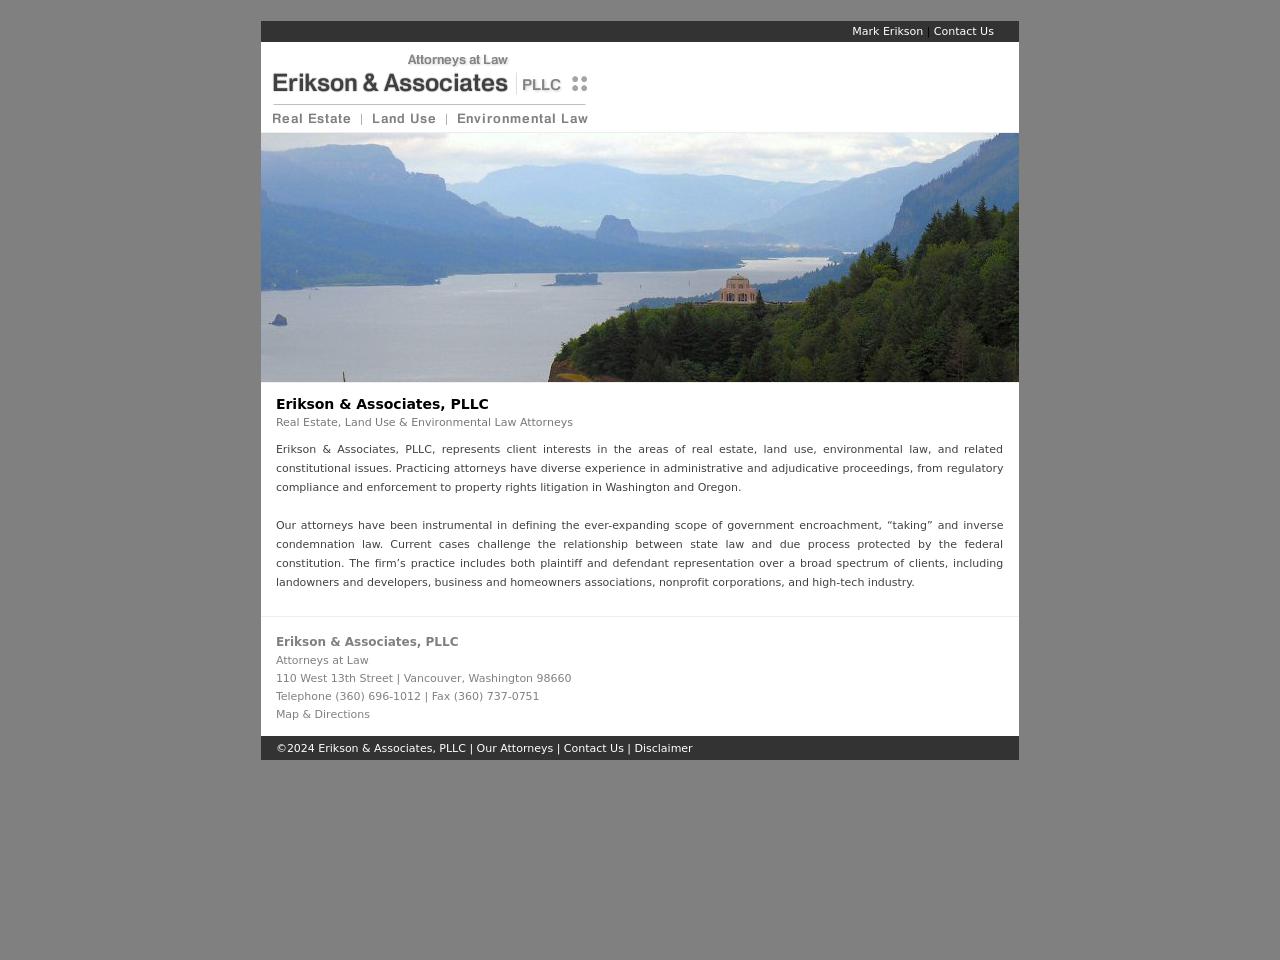 Erikson & Associates, PLLC - Vancouver WA Lawyers